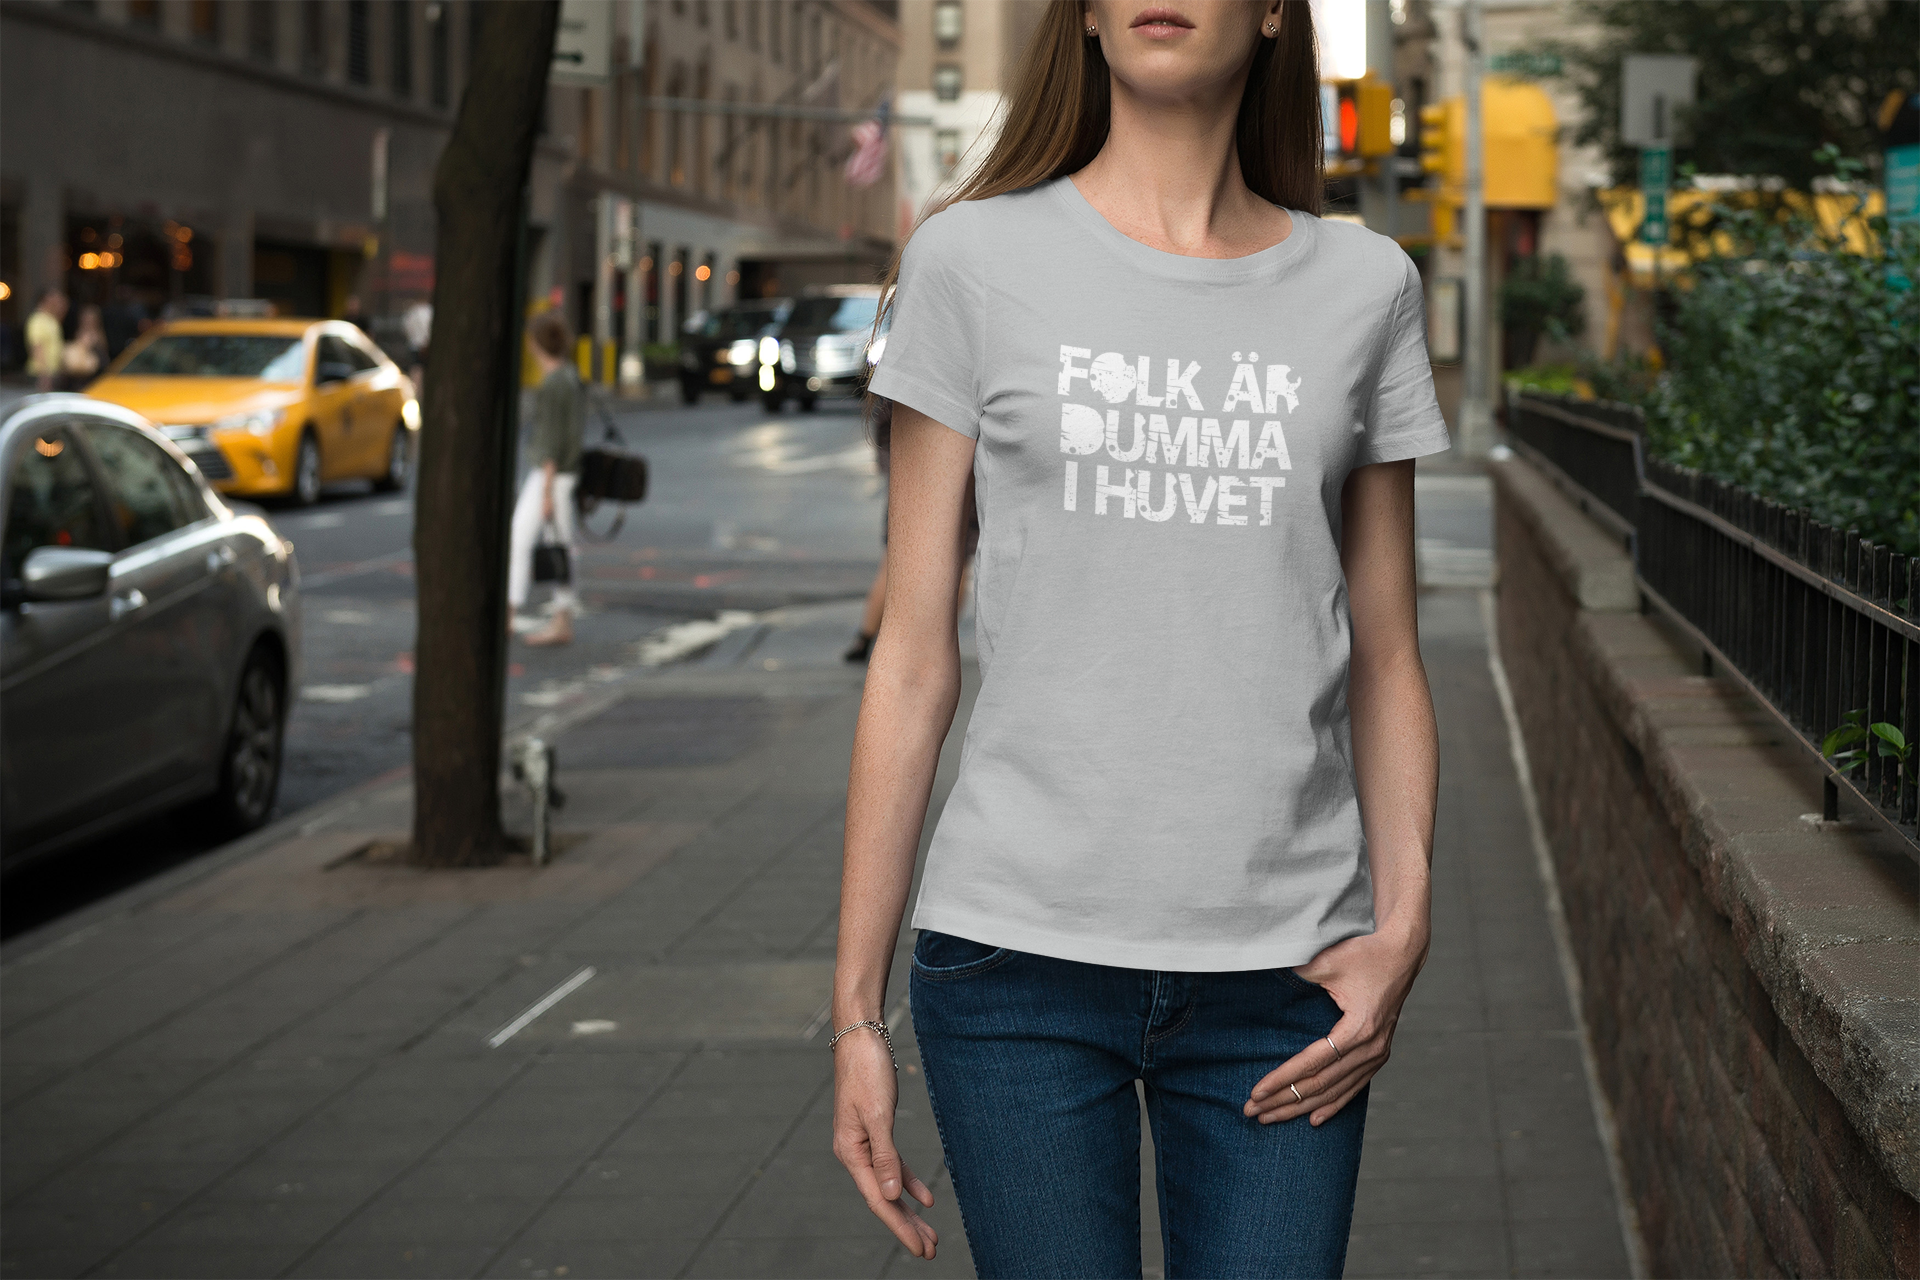 Dumma i huvet T-Shirt Women